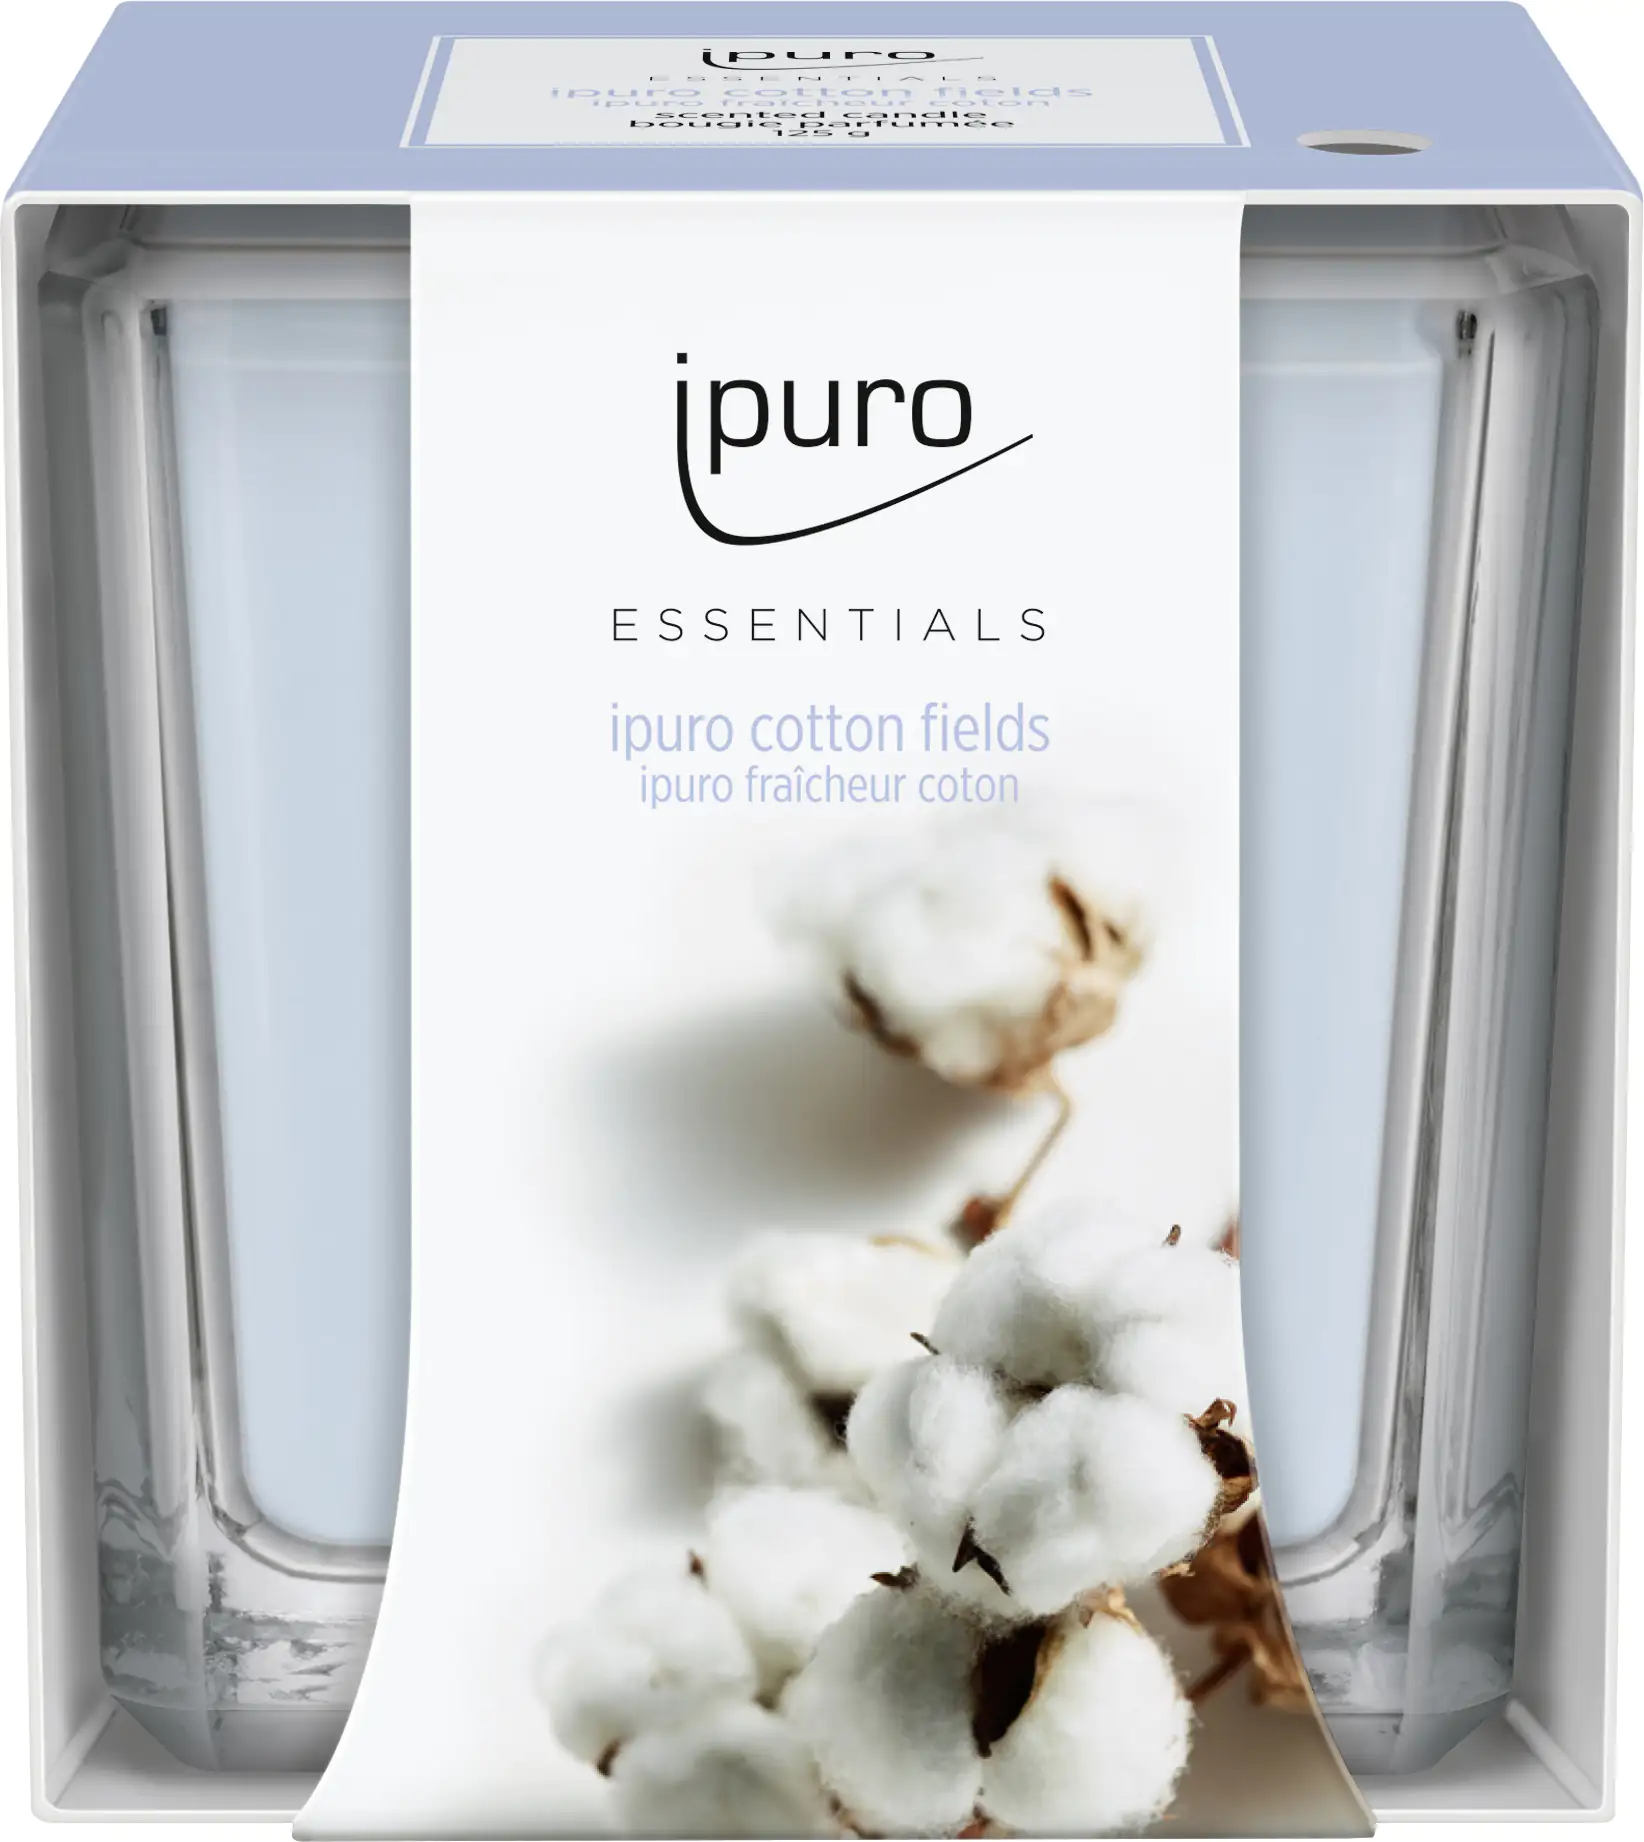 ipuro Essentials cotton fields Raumduft kaufen